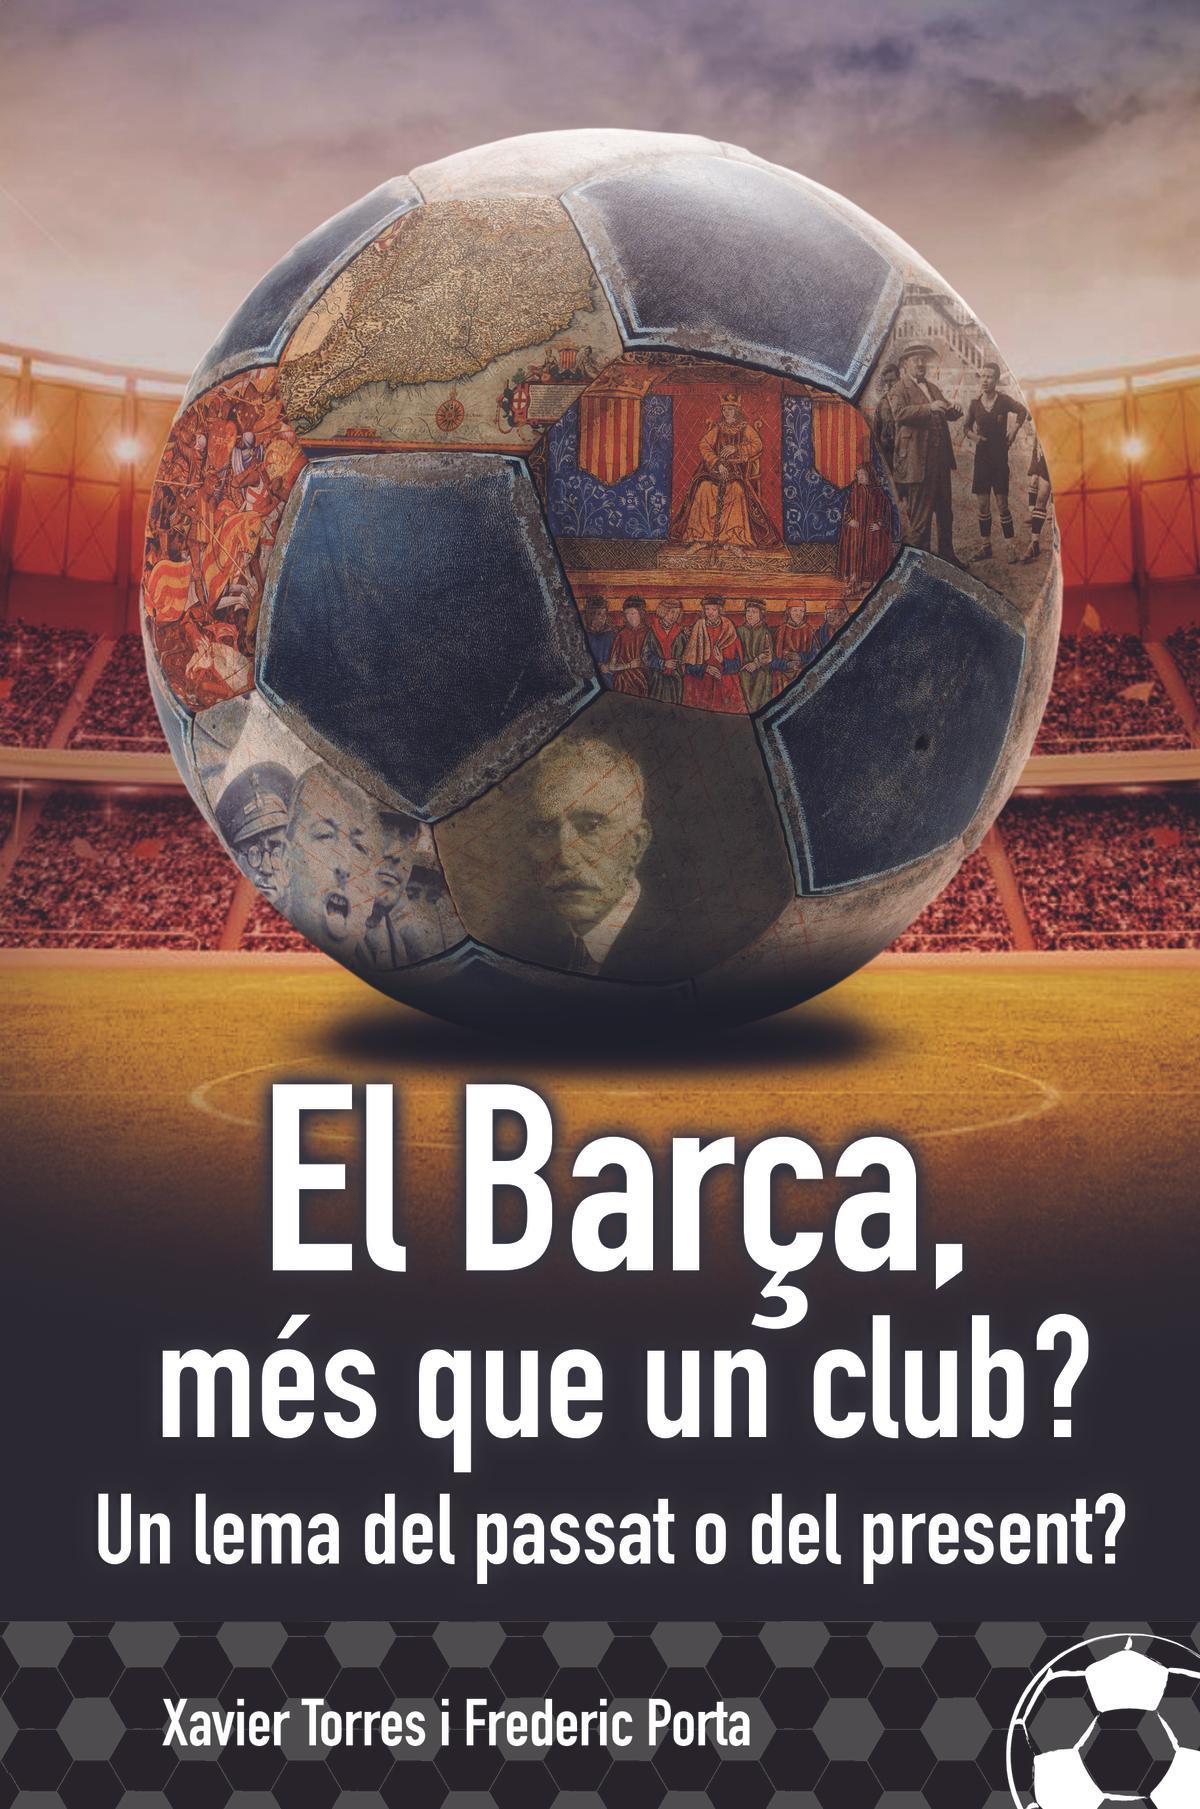 El Barça, vist pels líders polítics